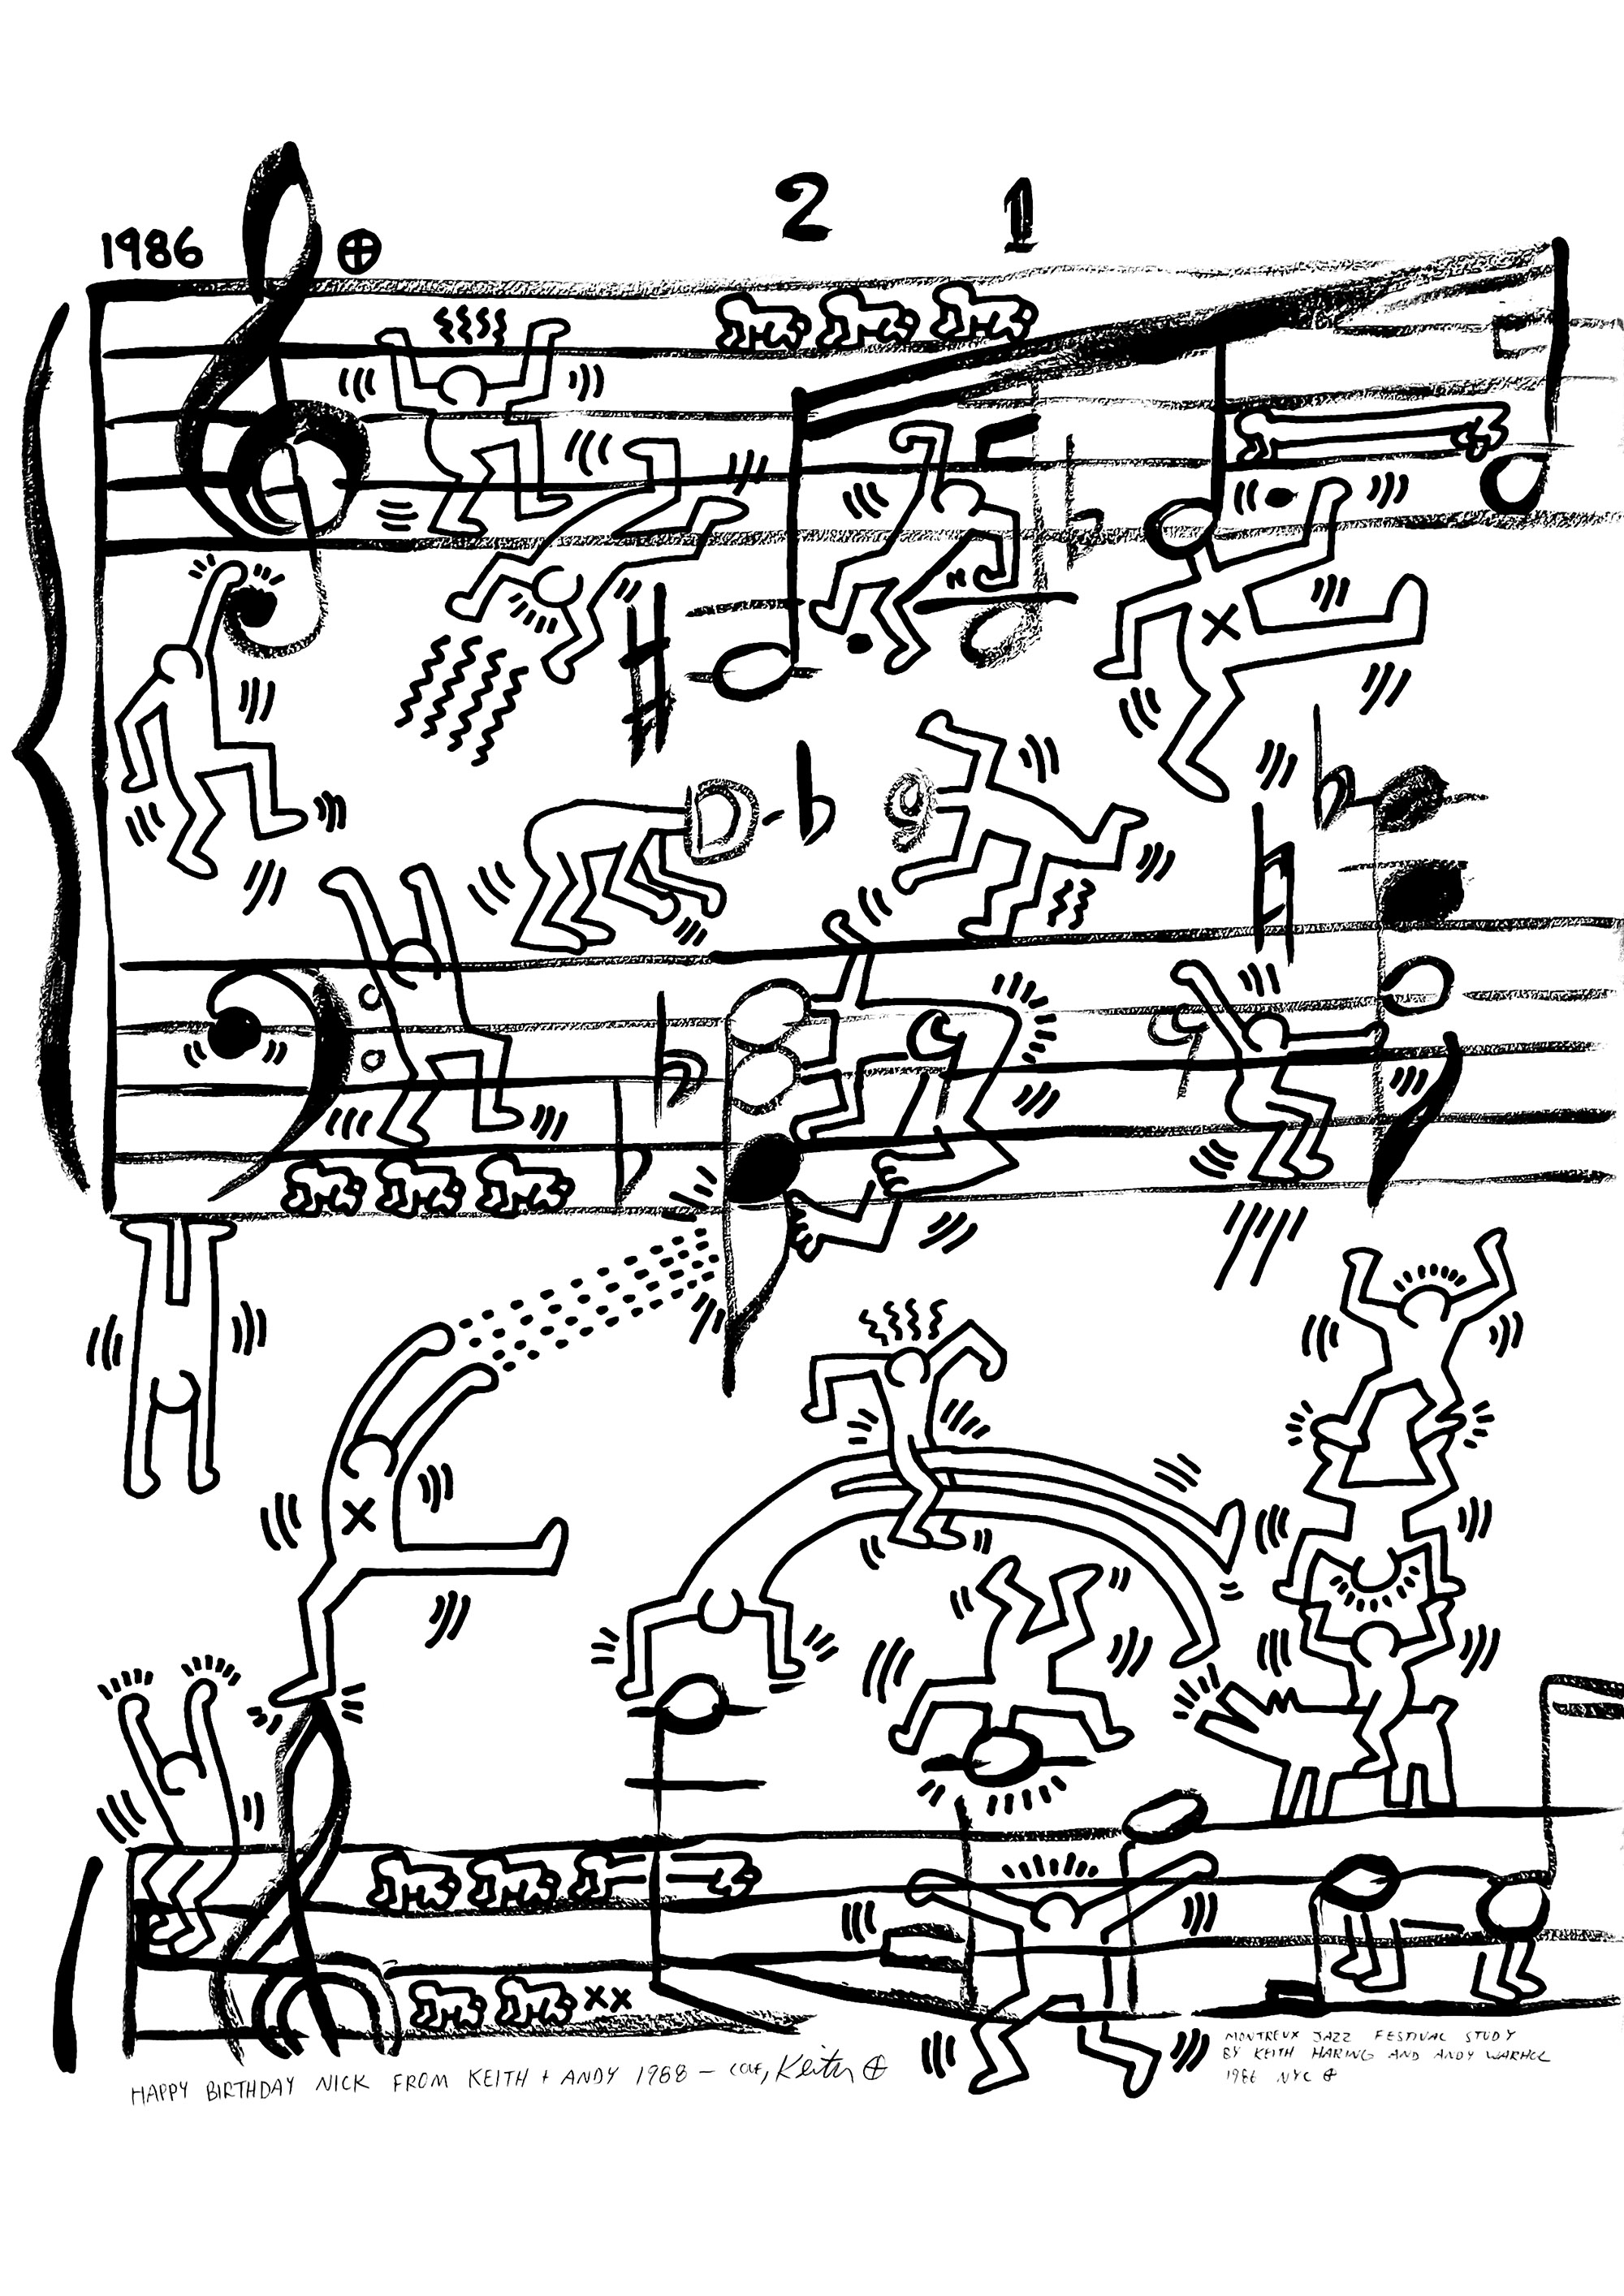 Progetto di manifesto per il Montreux Jazz Festival di Andy Warhol e Keith Haring, 1986. L'amicizia tra Keith Haring e Andy Warhol ha avuto un profondo impatto sul suo lavoro. Dopo il loro primo incontro alla Tony Shafrazi Gallery nel 1984, Keith Haring ha introdotto Andy Warhol nella scena creativa di Manhattan, un ambiente che ha continuato a ispirare il padre fondatore della Pop Art per tutta la sua carriera.